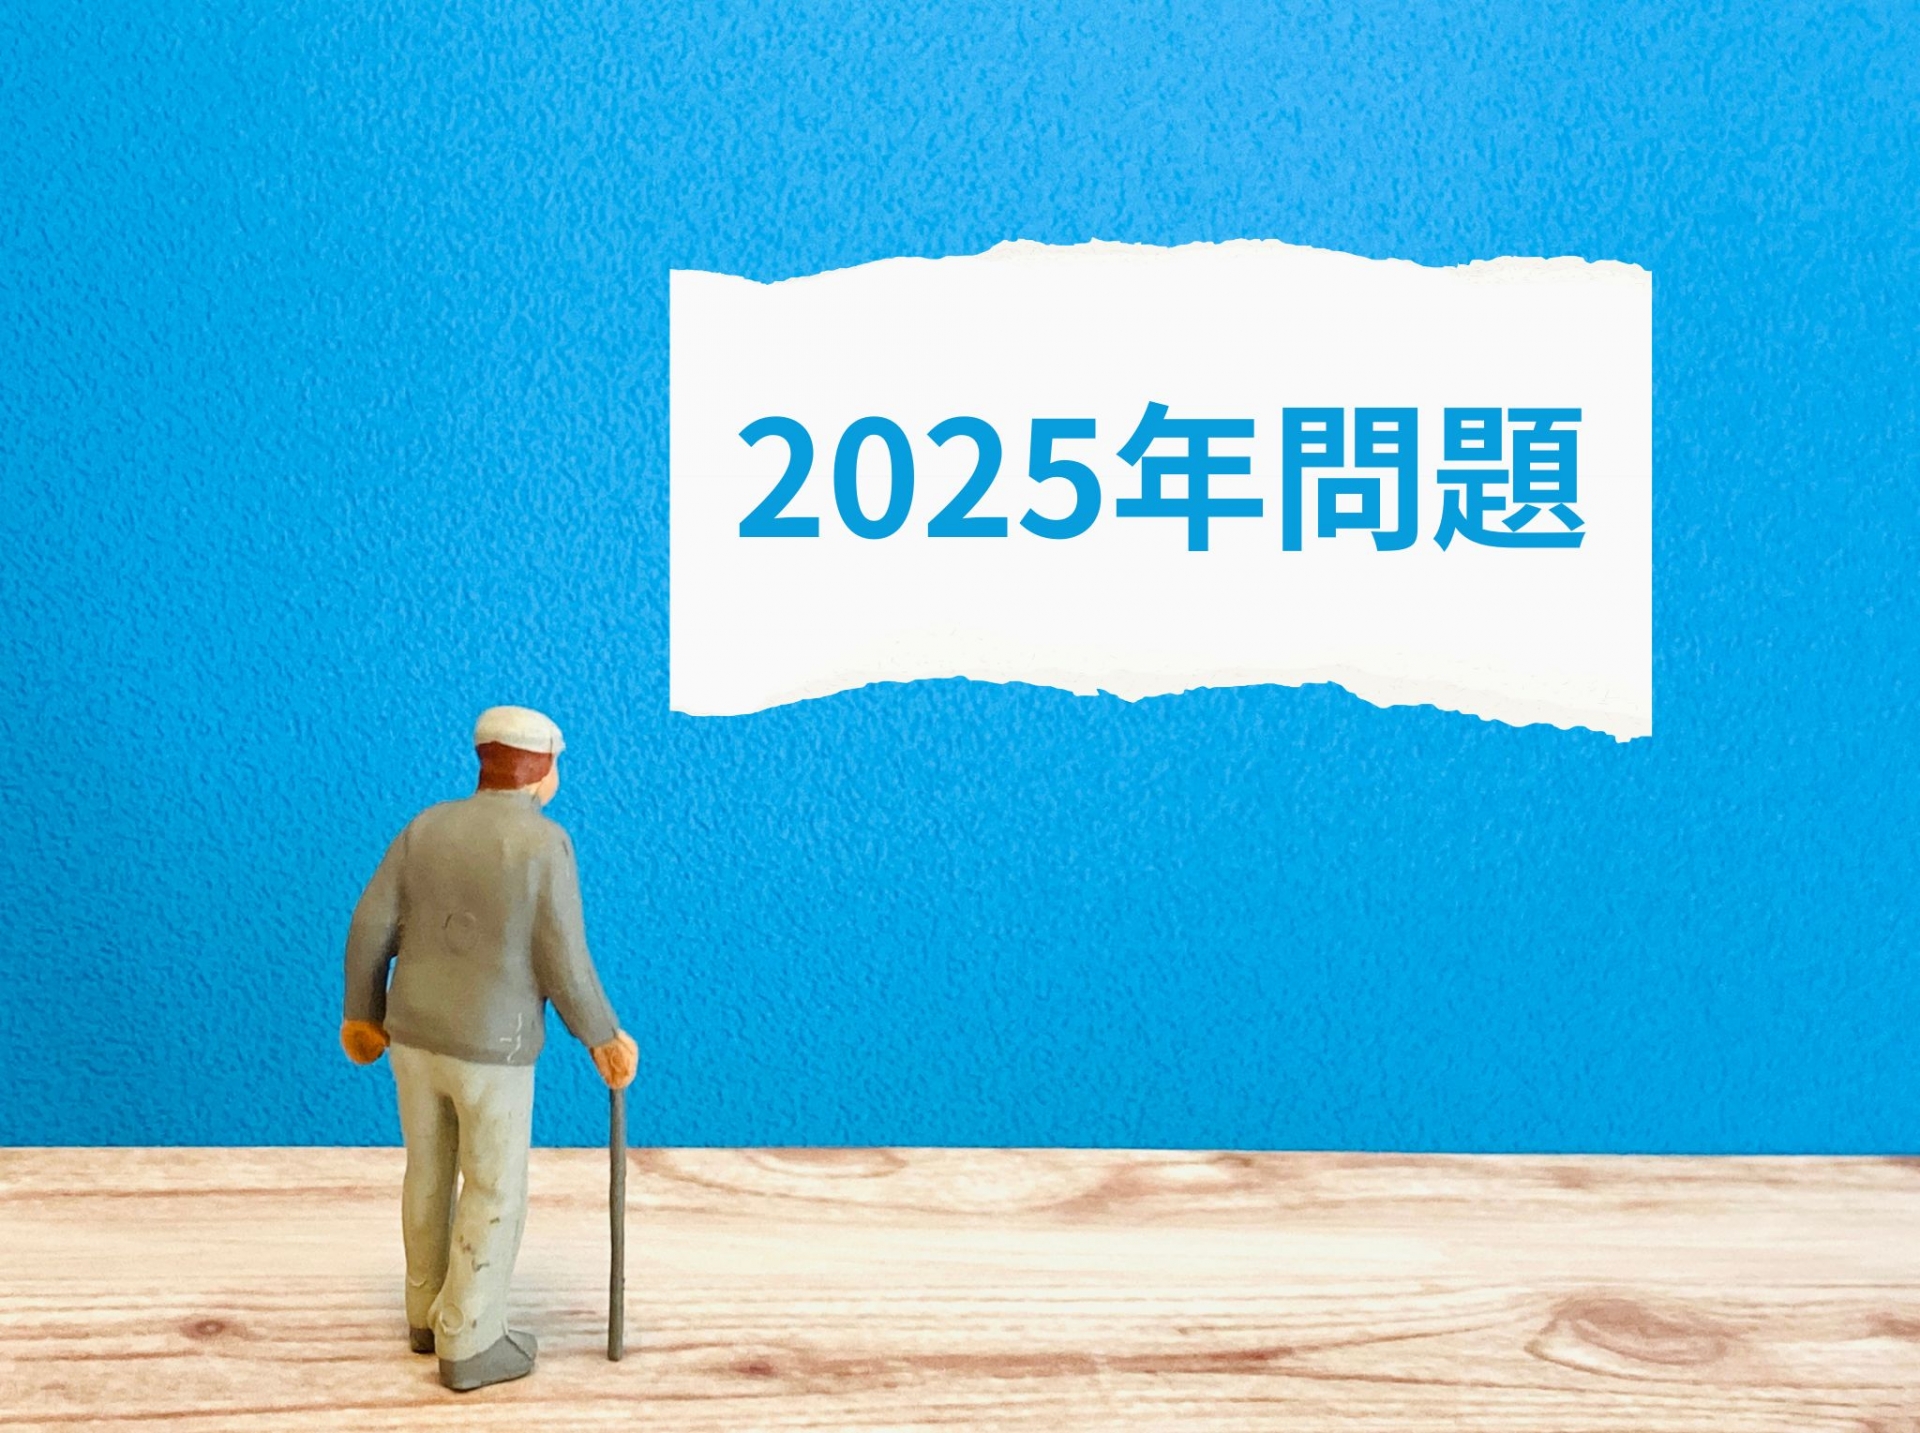 2025年問題とは？高齢化が進む社会で中小企業が生き残るために取り組むべき対策